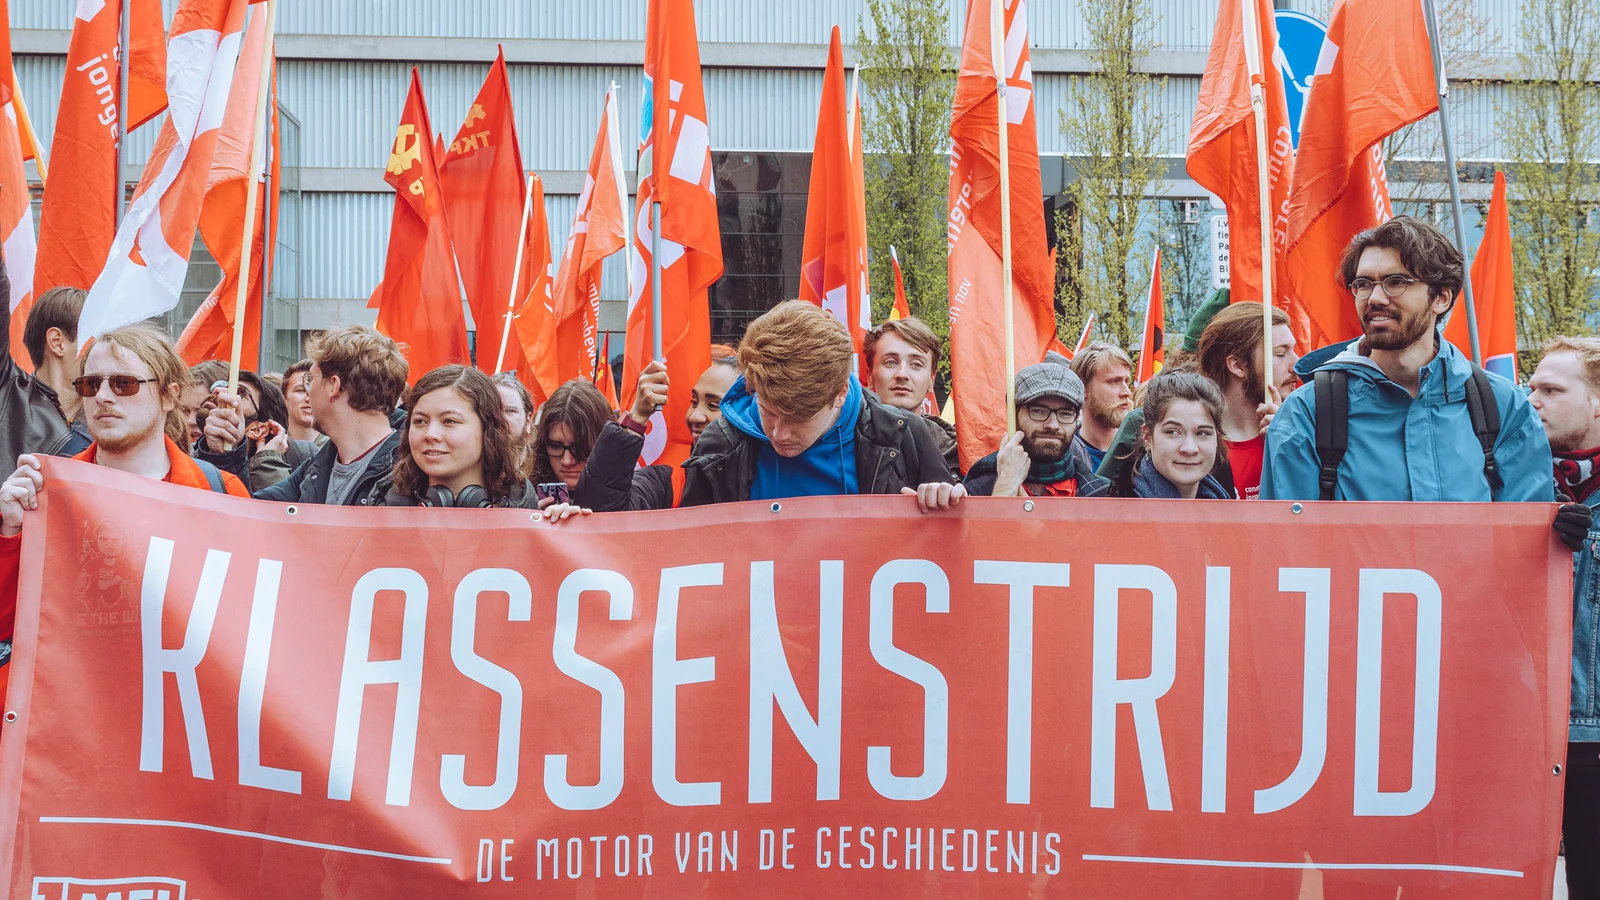 Een foto van demonstrerende communisten met een grote banner waarop staat "Klassenstrijd"